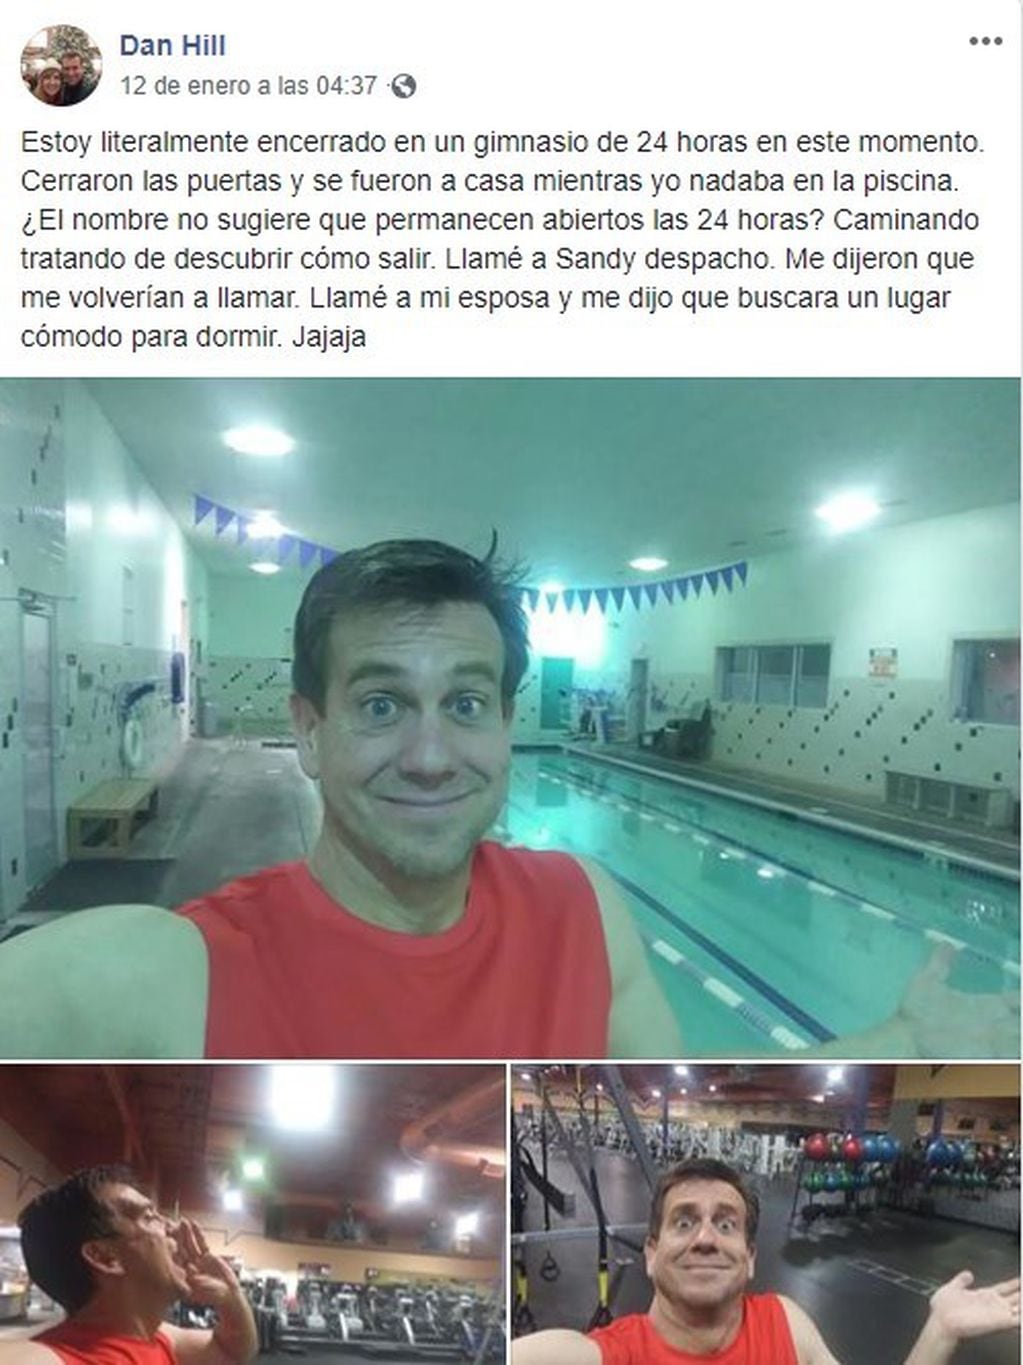 Lo dejaron encerrado en el gimnasio, lo contó en Facebook y sus fotos se volvieron virales (Foto: Facebook/ Dan Hill)